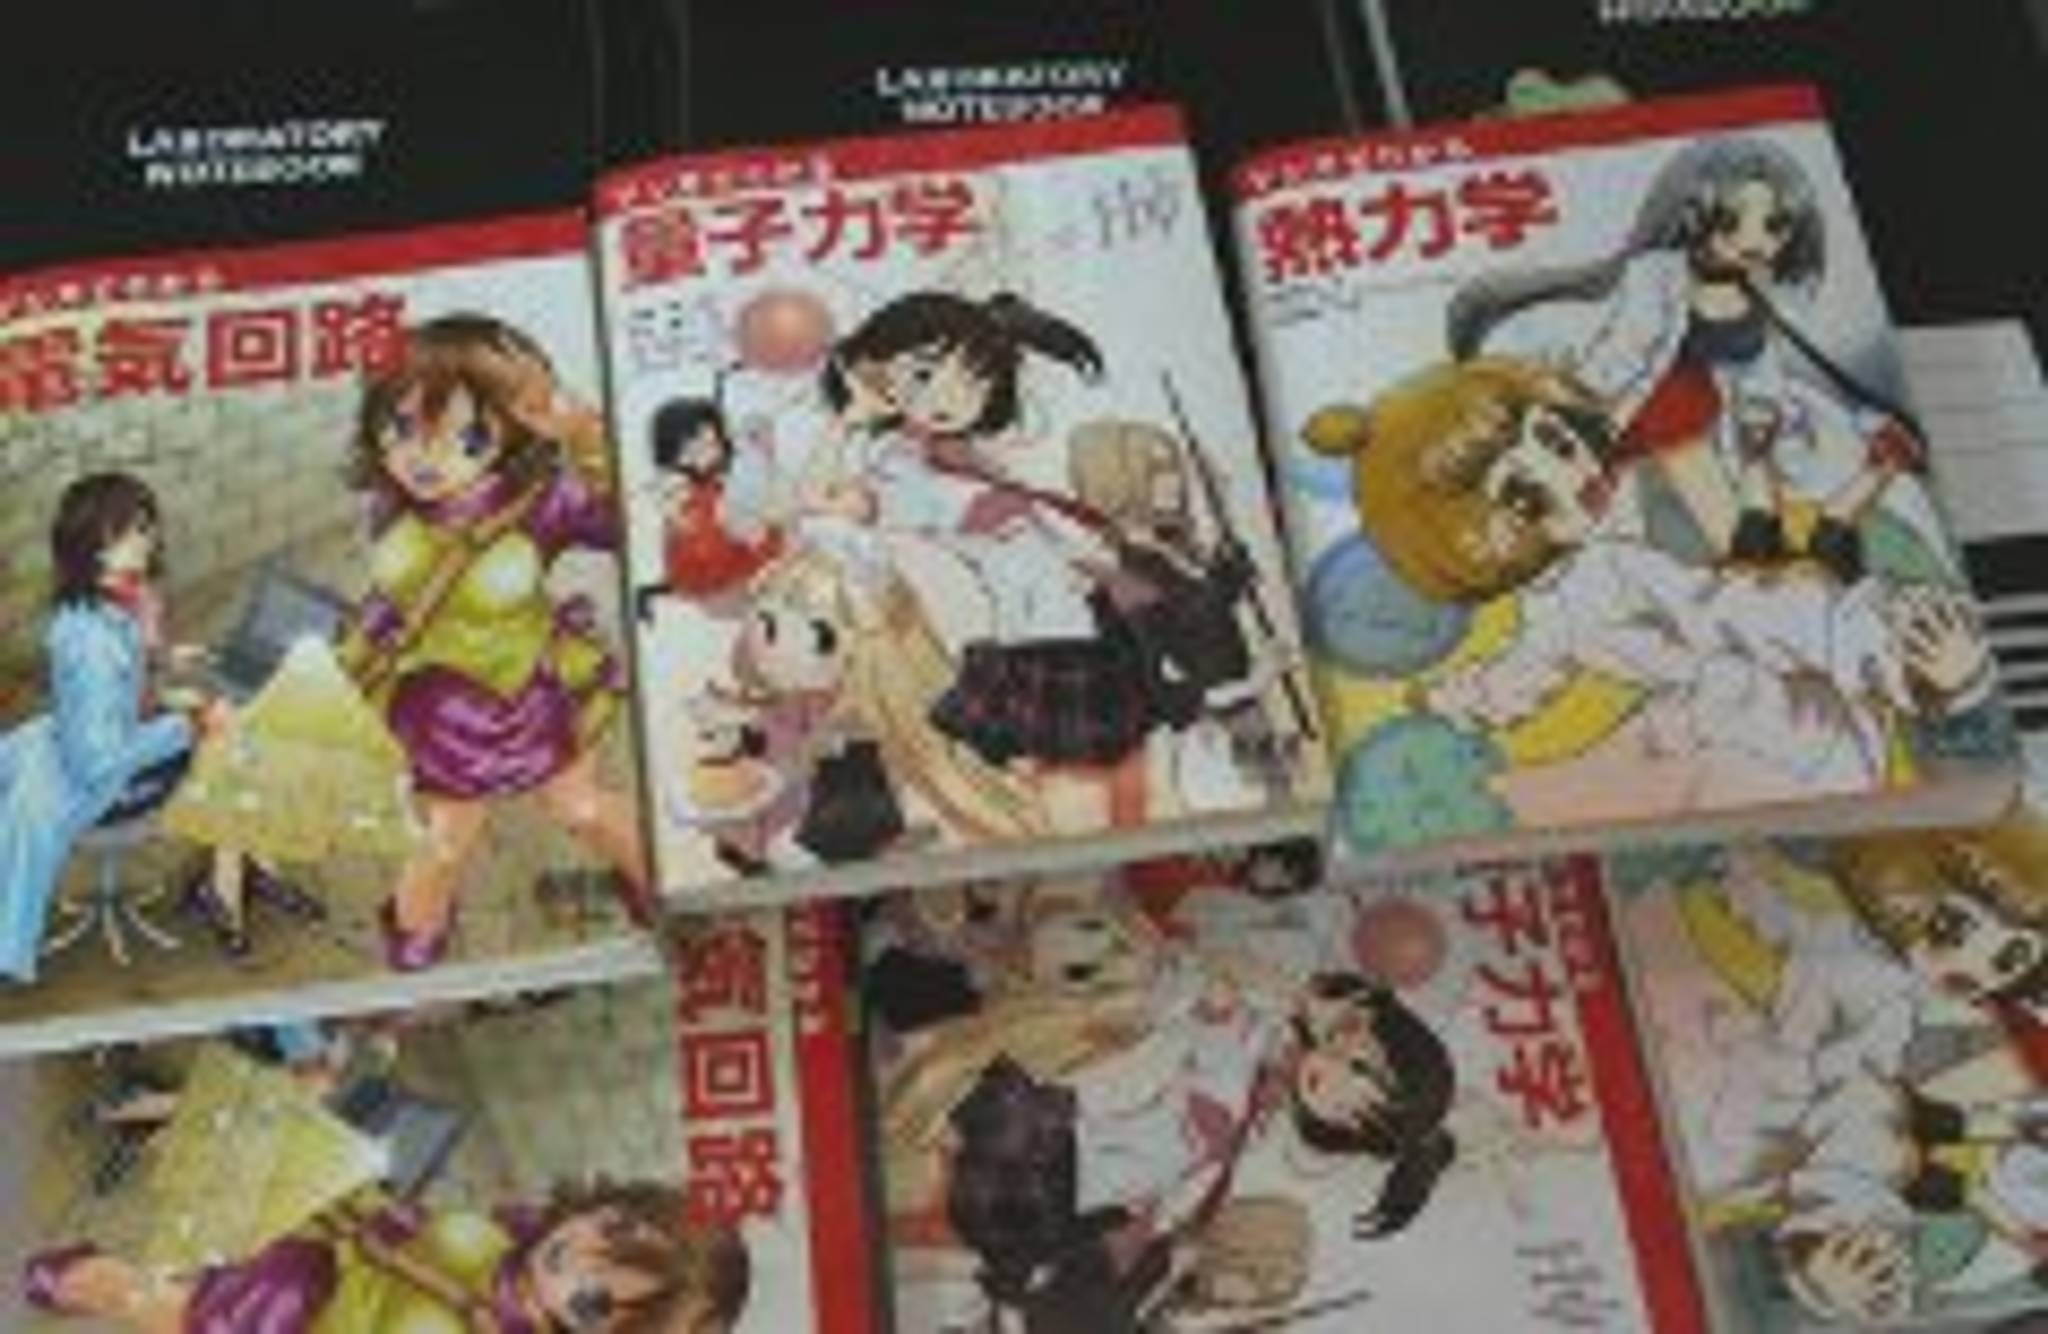 Manga textbooks